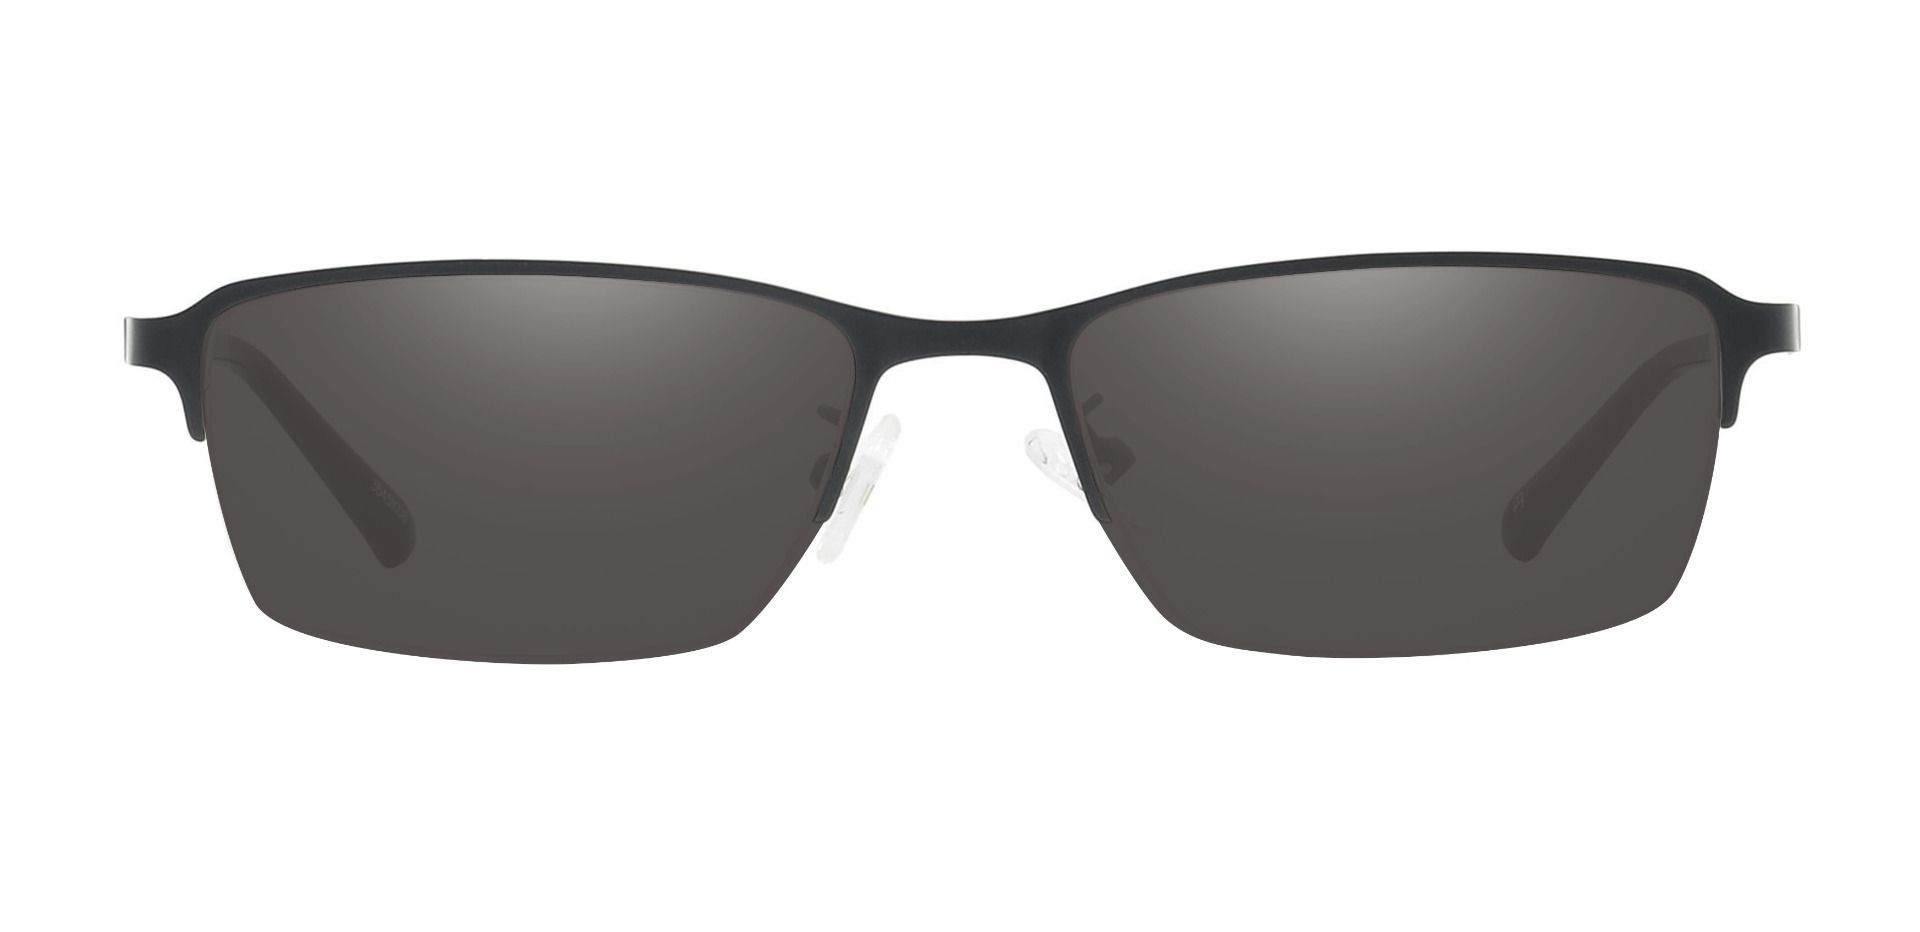 Bennett Rectangle Prescription Sunglasses - Black Frame With Gray Lenses